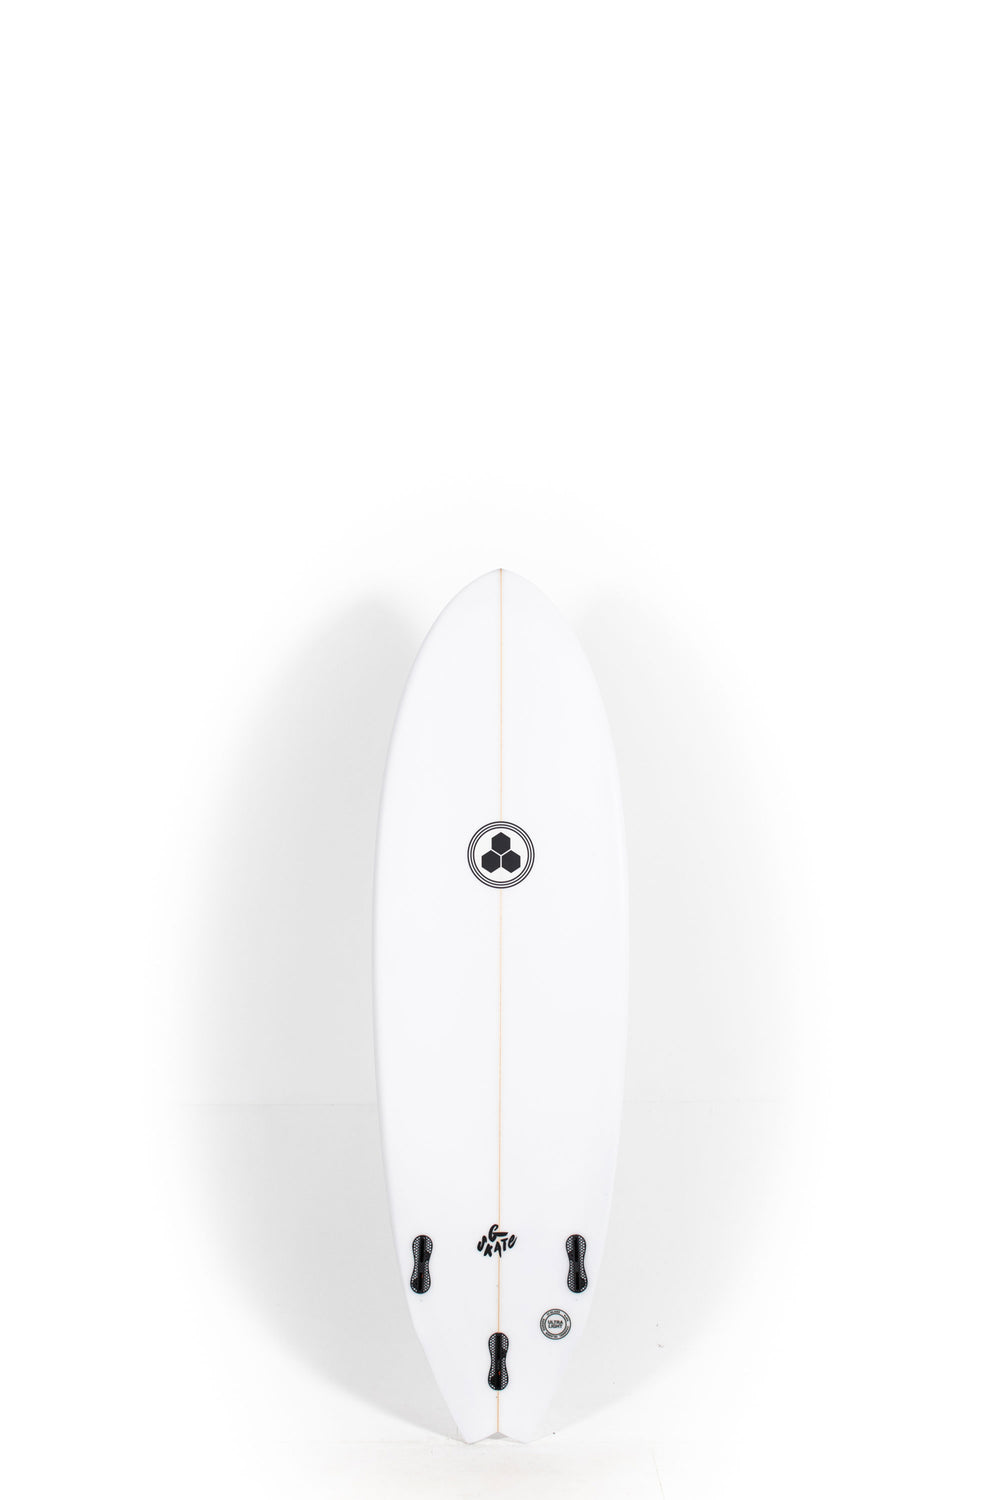 人気No.1/本体 X lite - Channel Islands surfboard Flyer - www